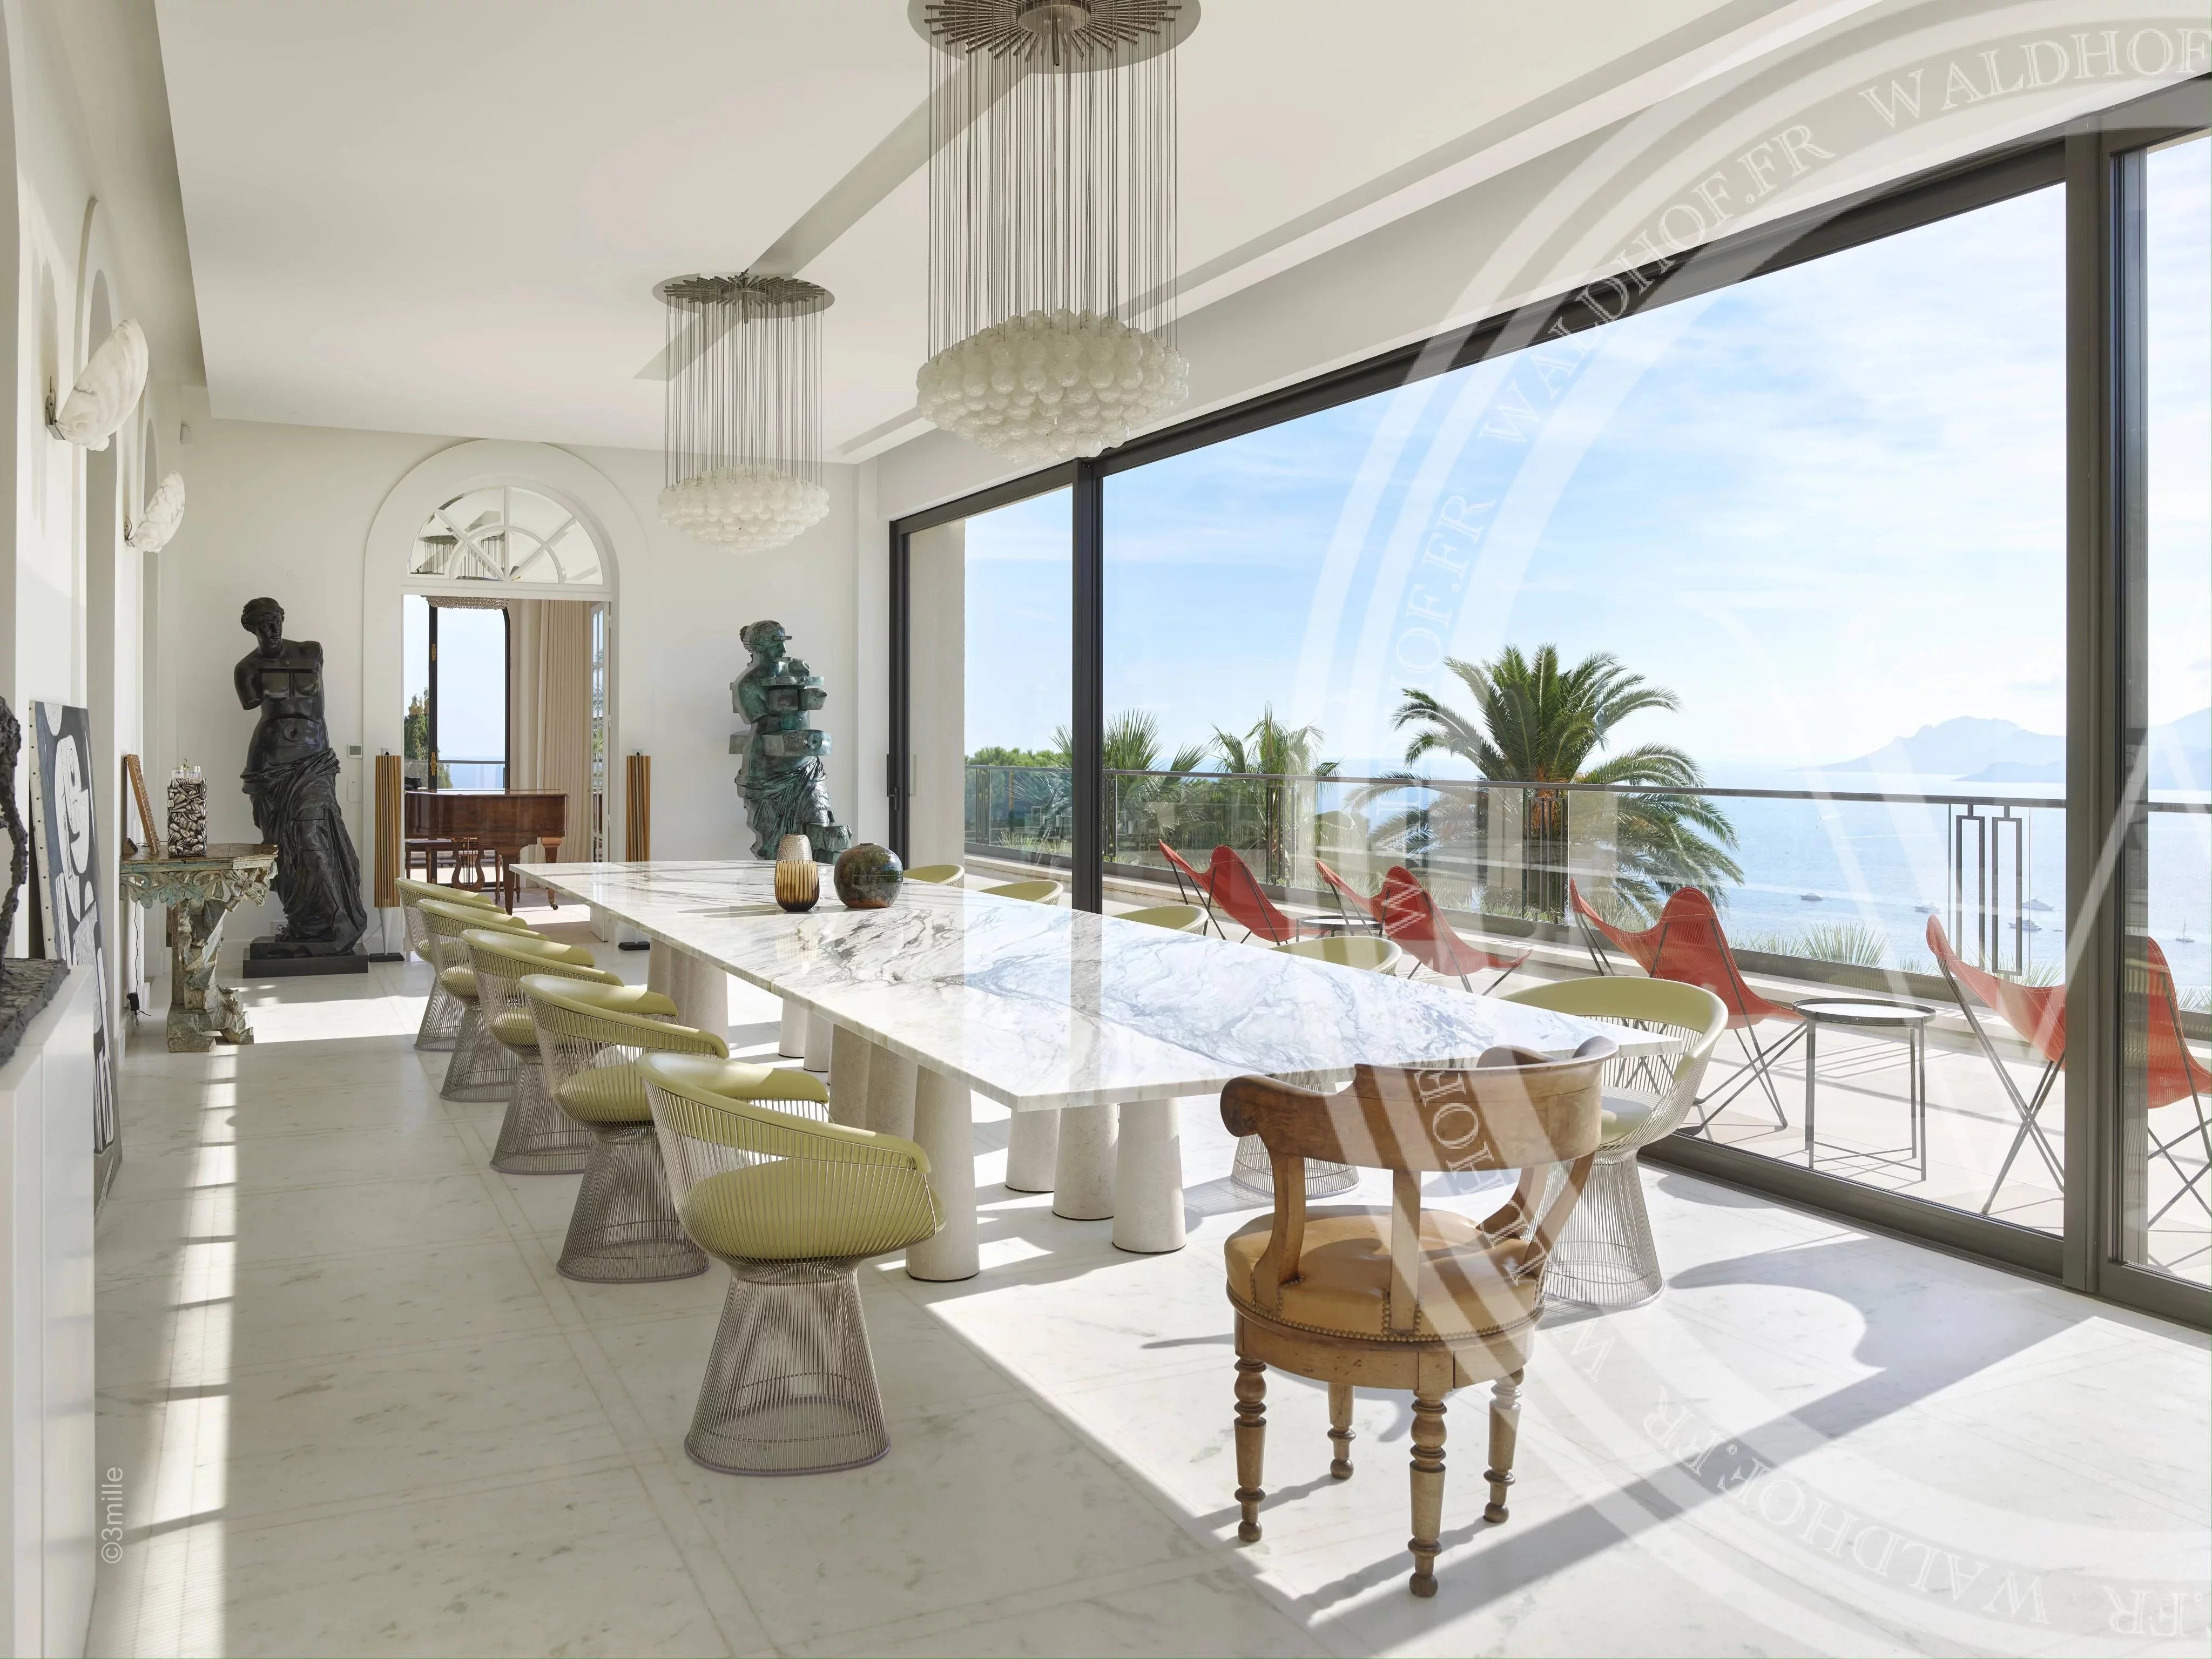 Palais de 3000m² entièrement rénové surplombant toute la ville de Cannes